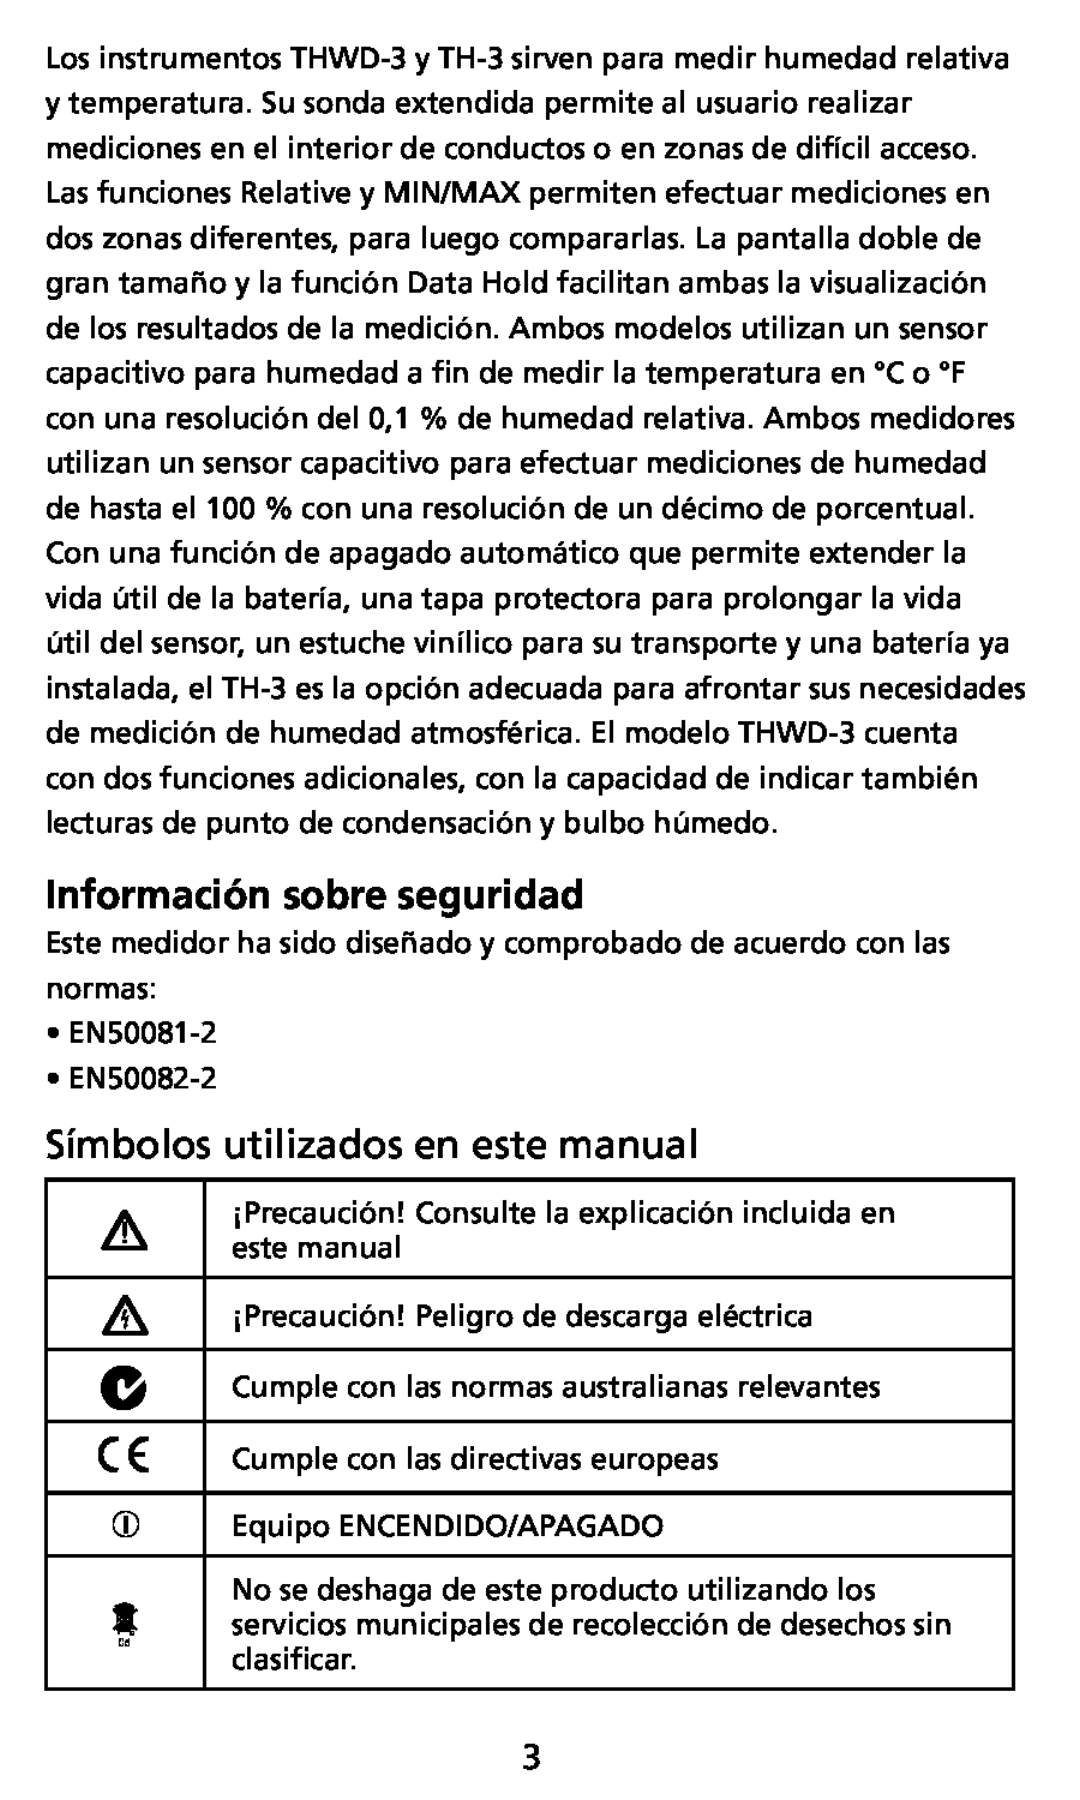 Ampro Corporation THWD-3, TH-3 user manual Información sobre seguridad, Símbolos utilizados en este manual 